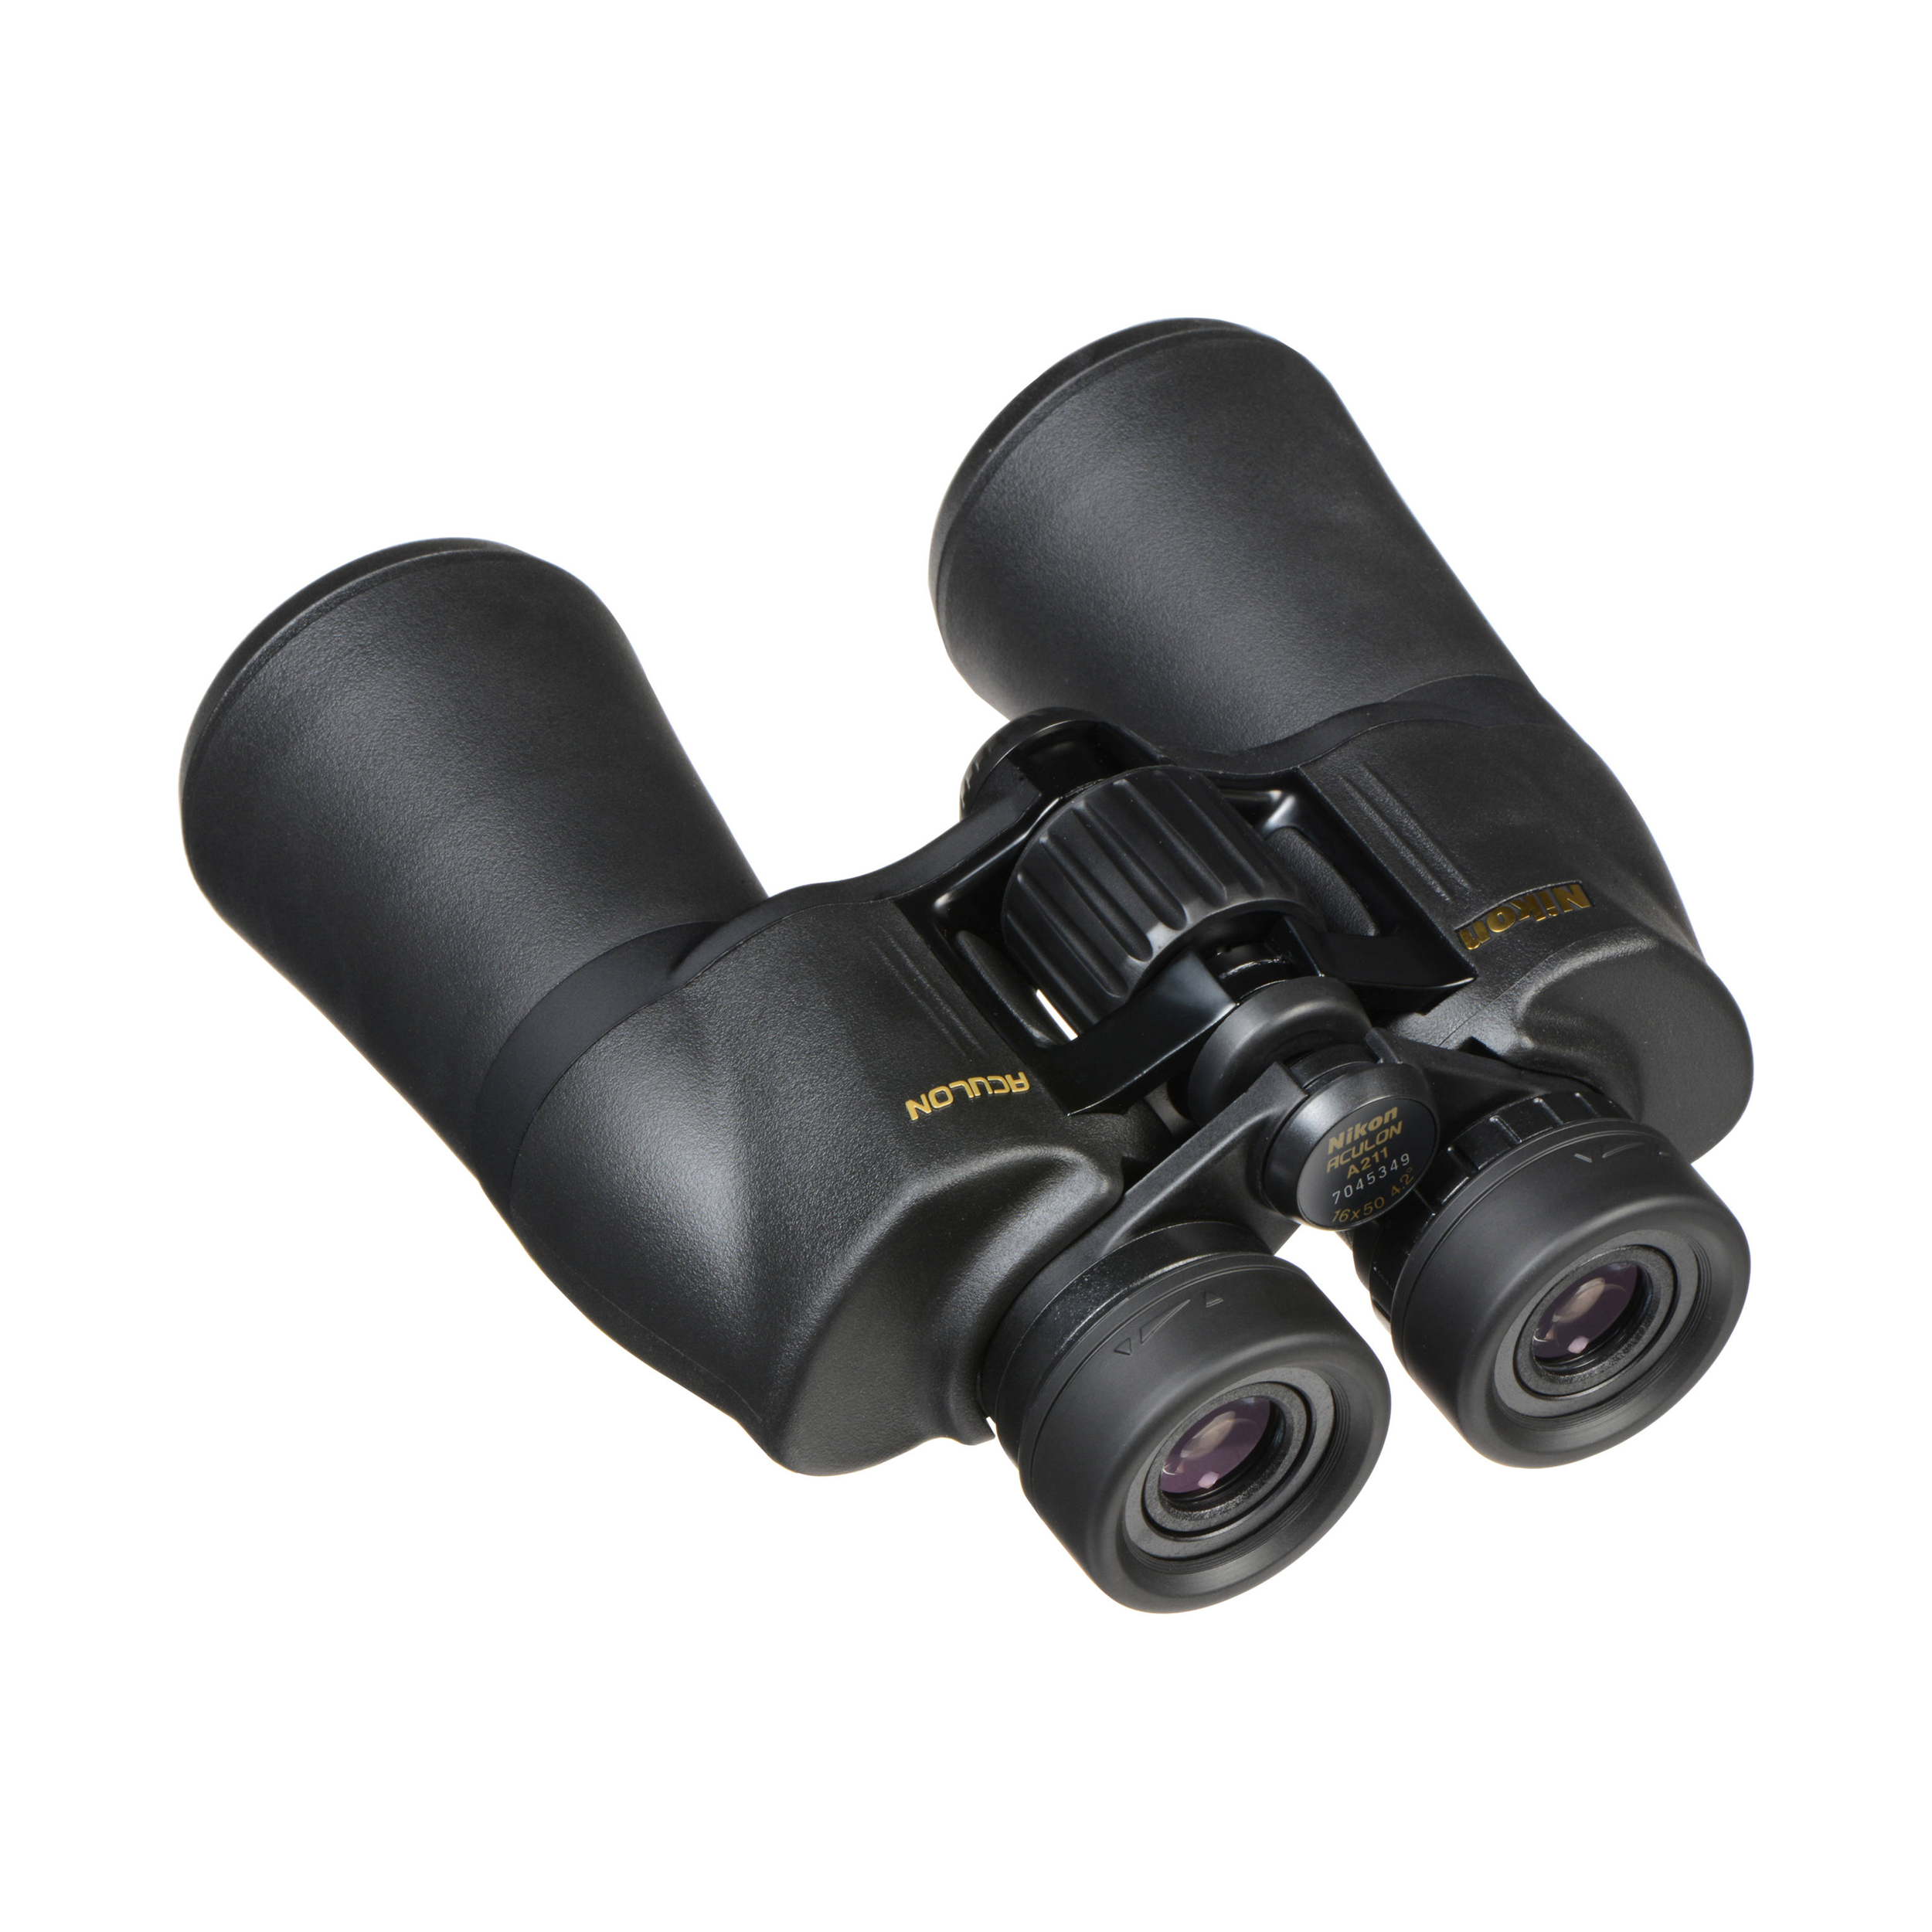 Binoculaires Nikon Aculon A211 - 16x50 - Boîte ouverte